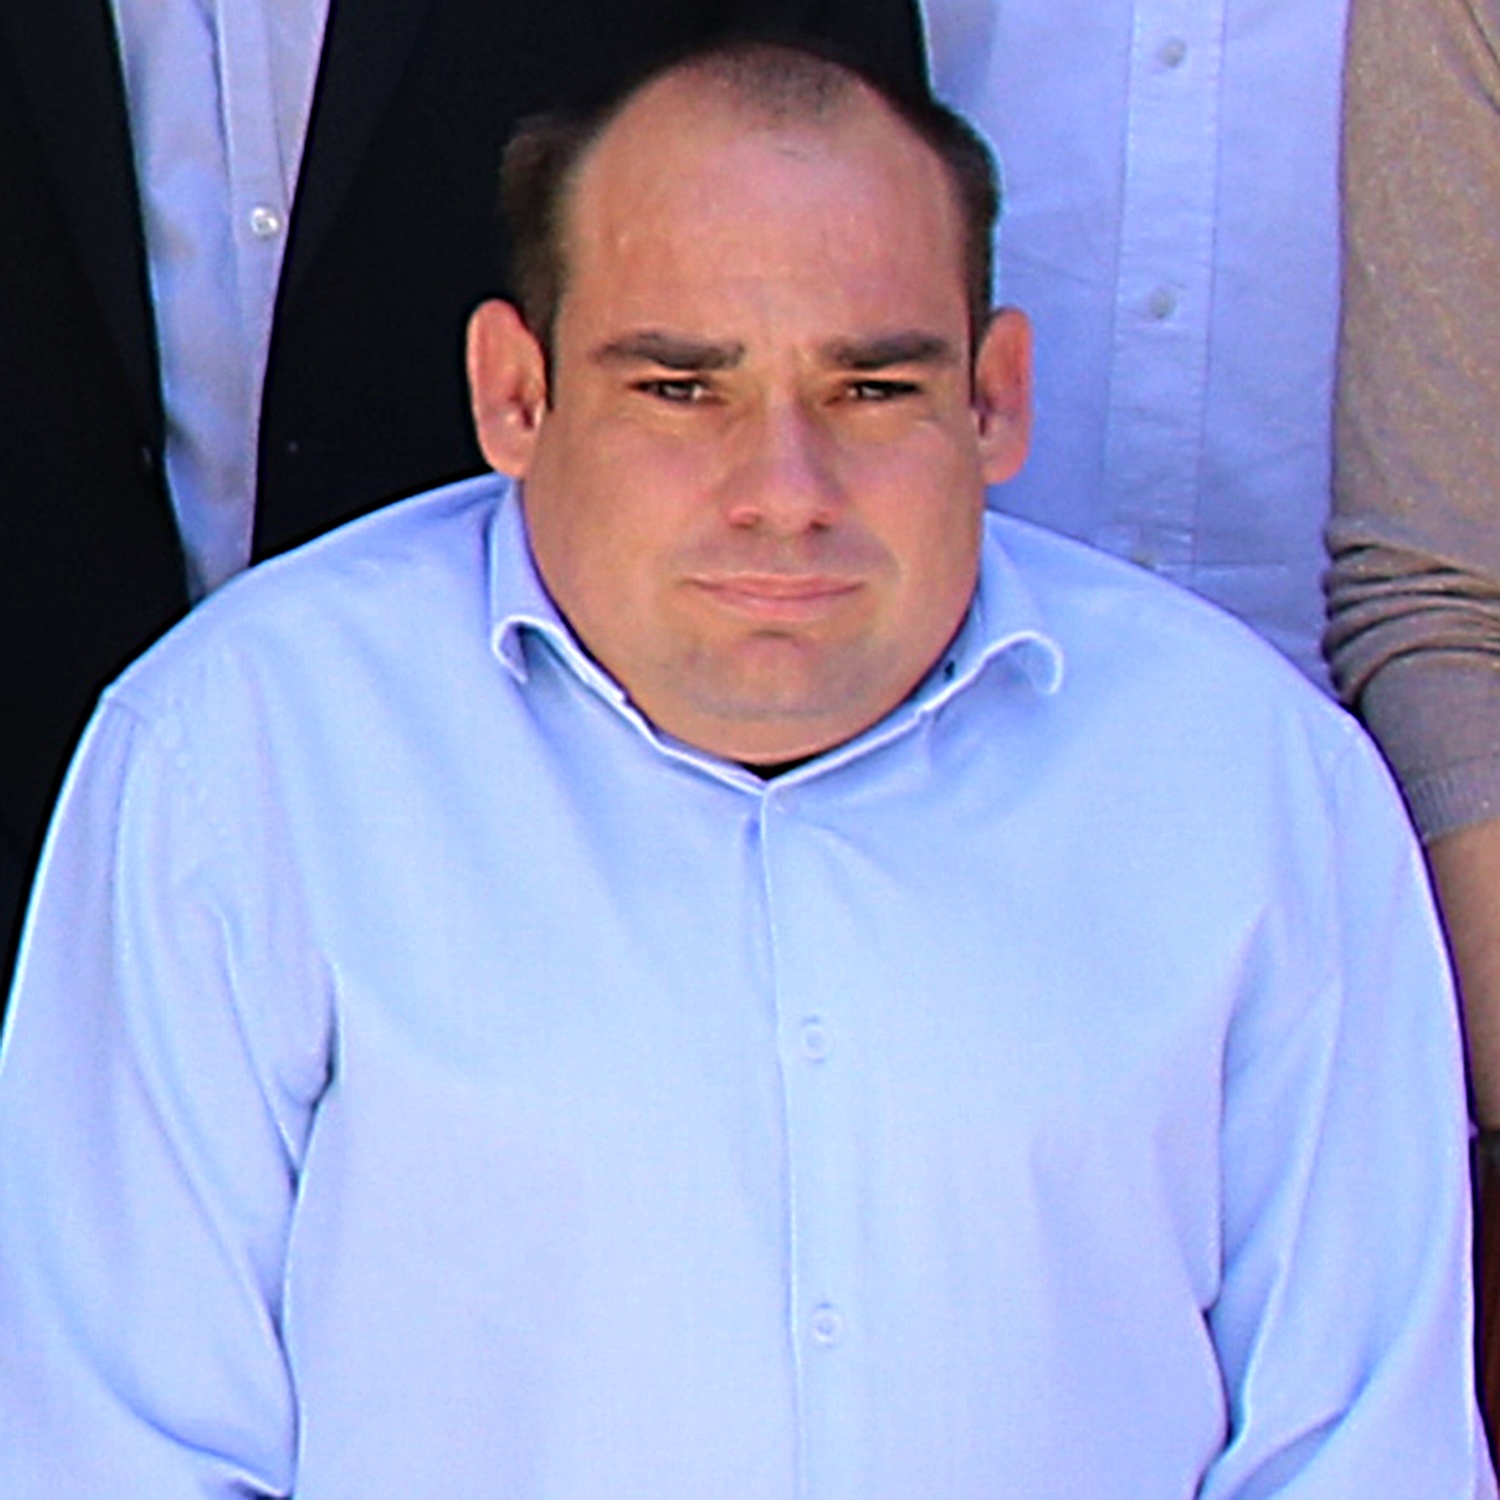 Antonio Carmona Castillo